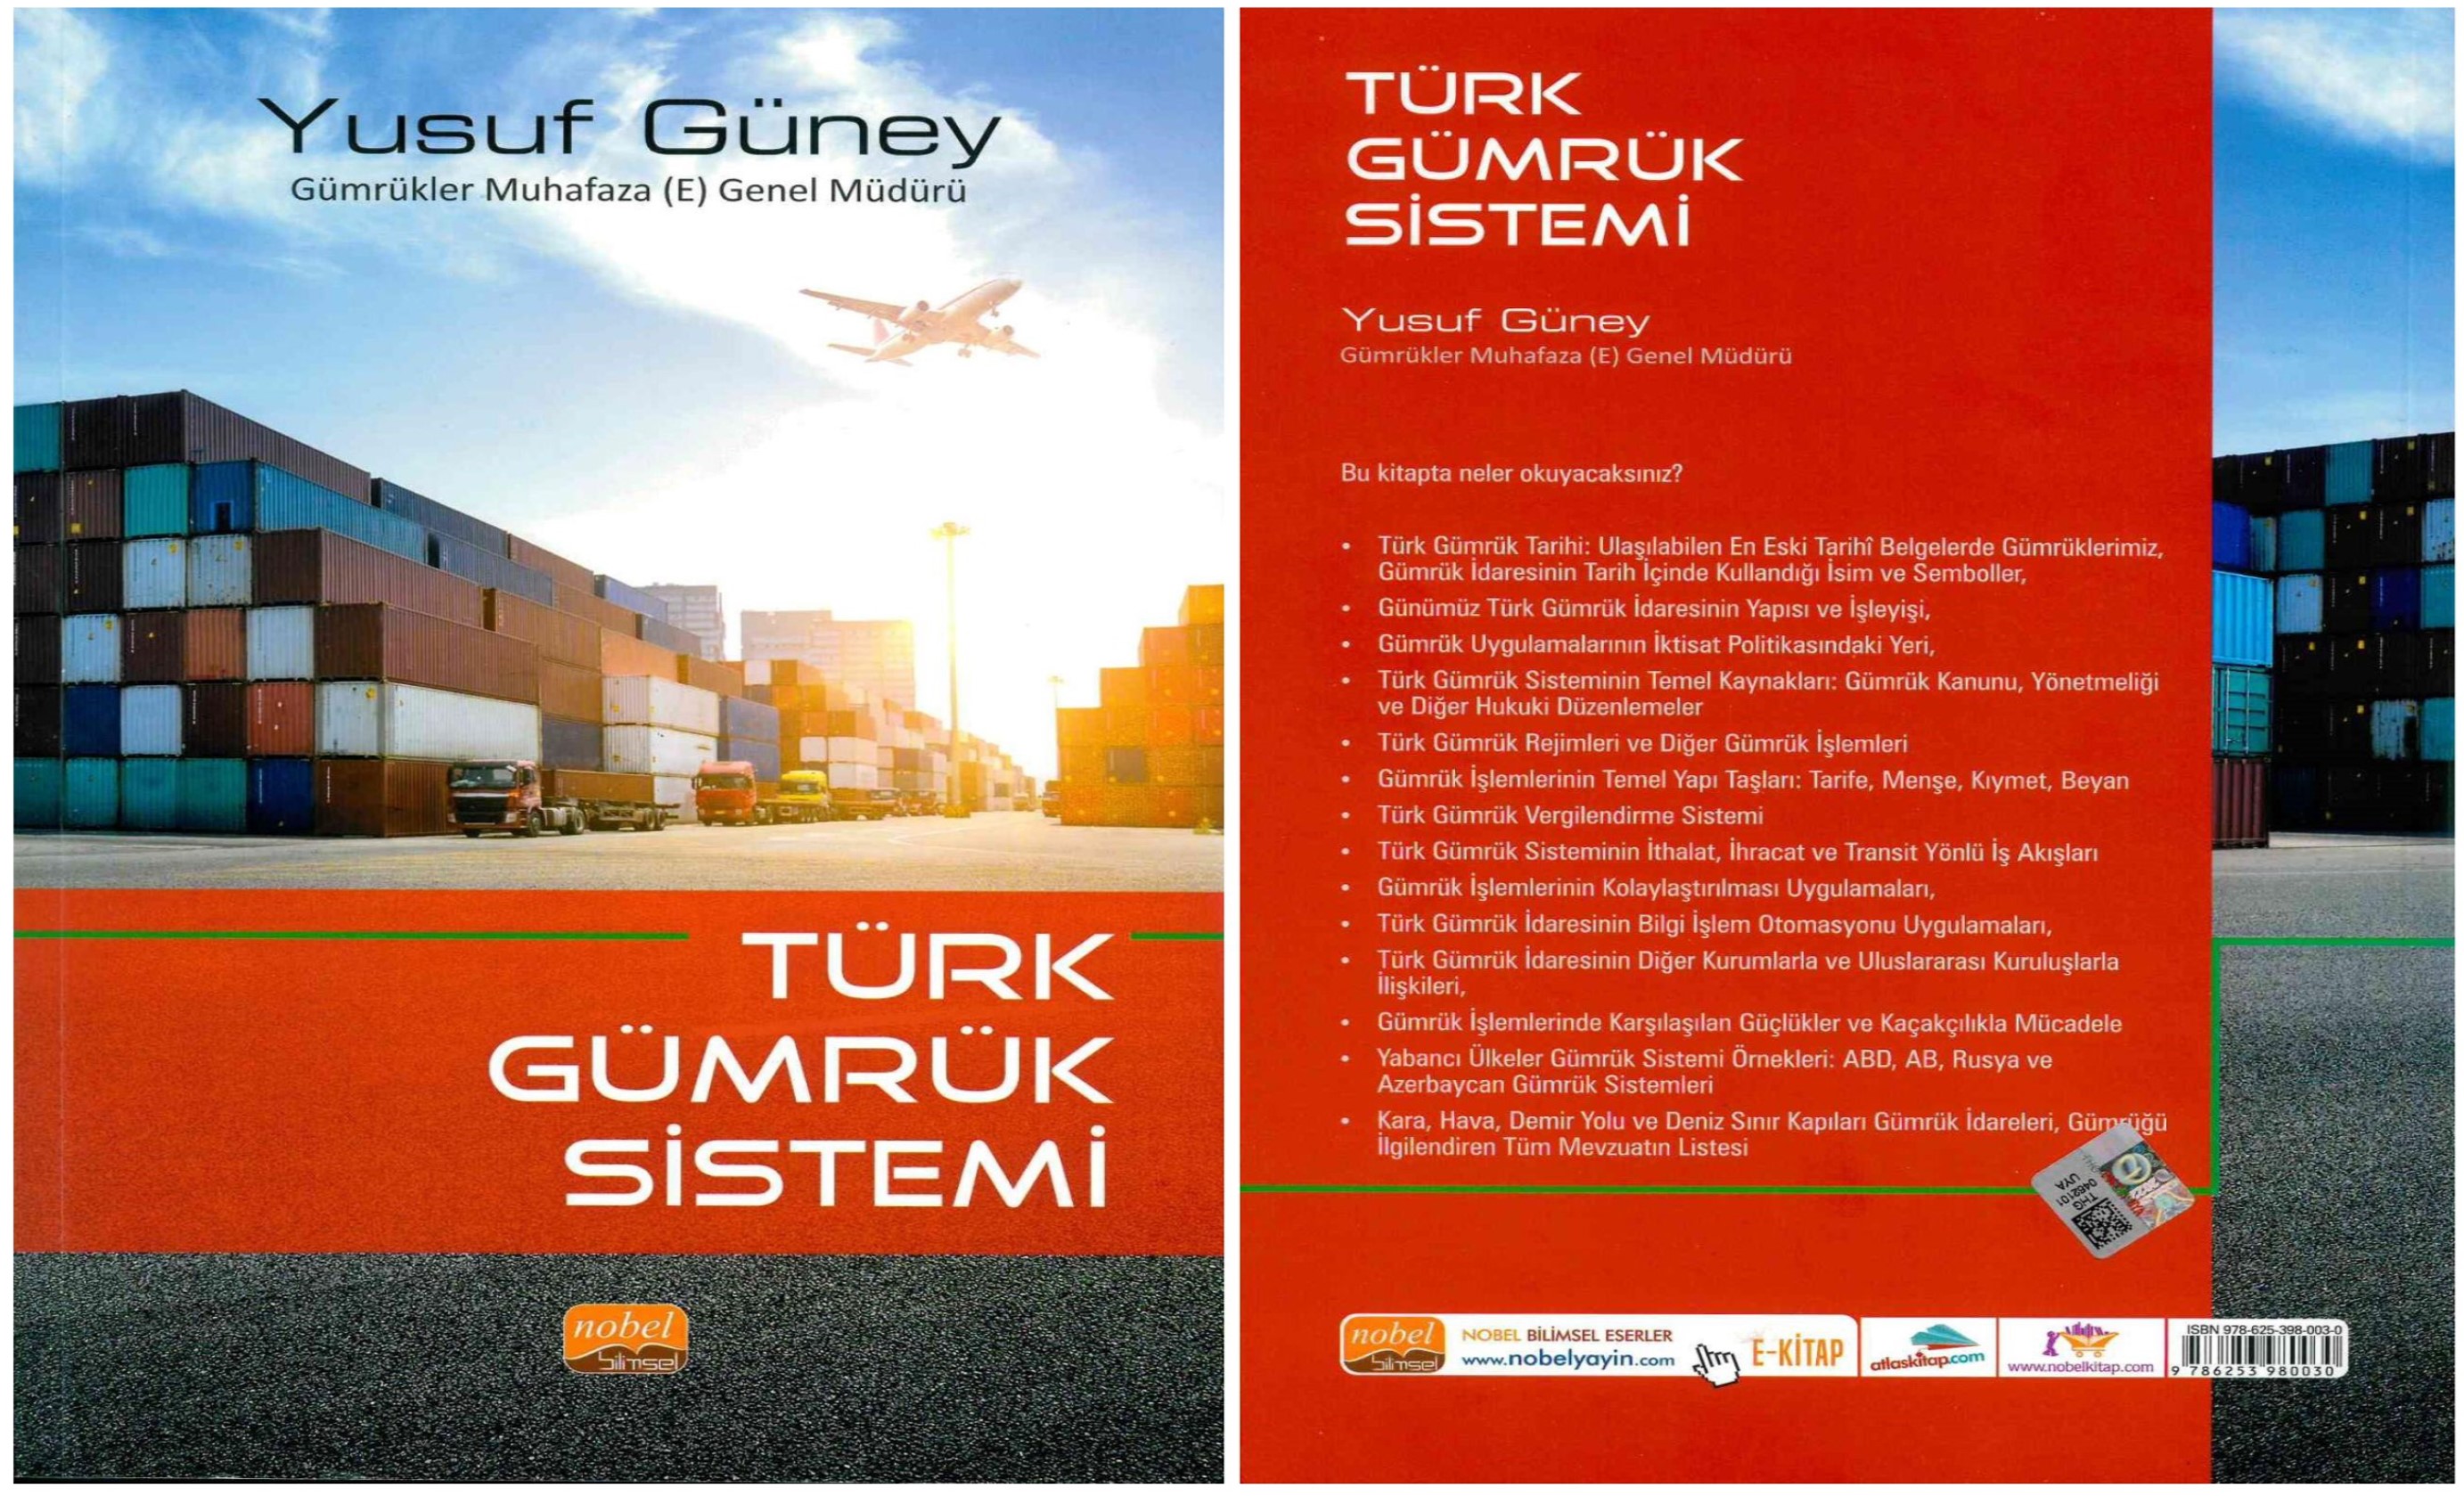 Gümrükler Muhafaza (E) Genel Müdürü Yusuf GÜNEY tarafından hazırlanan “Türk Gümrük Sistemi” Kitabı